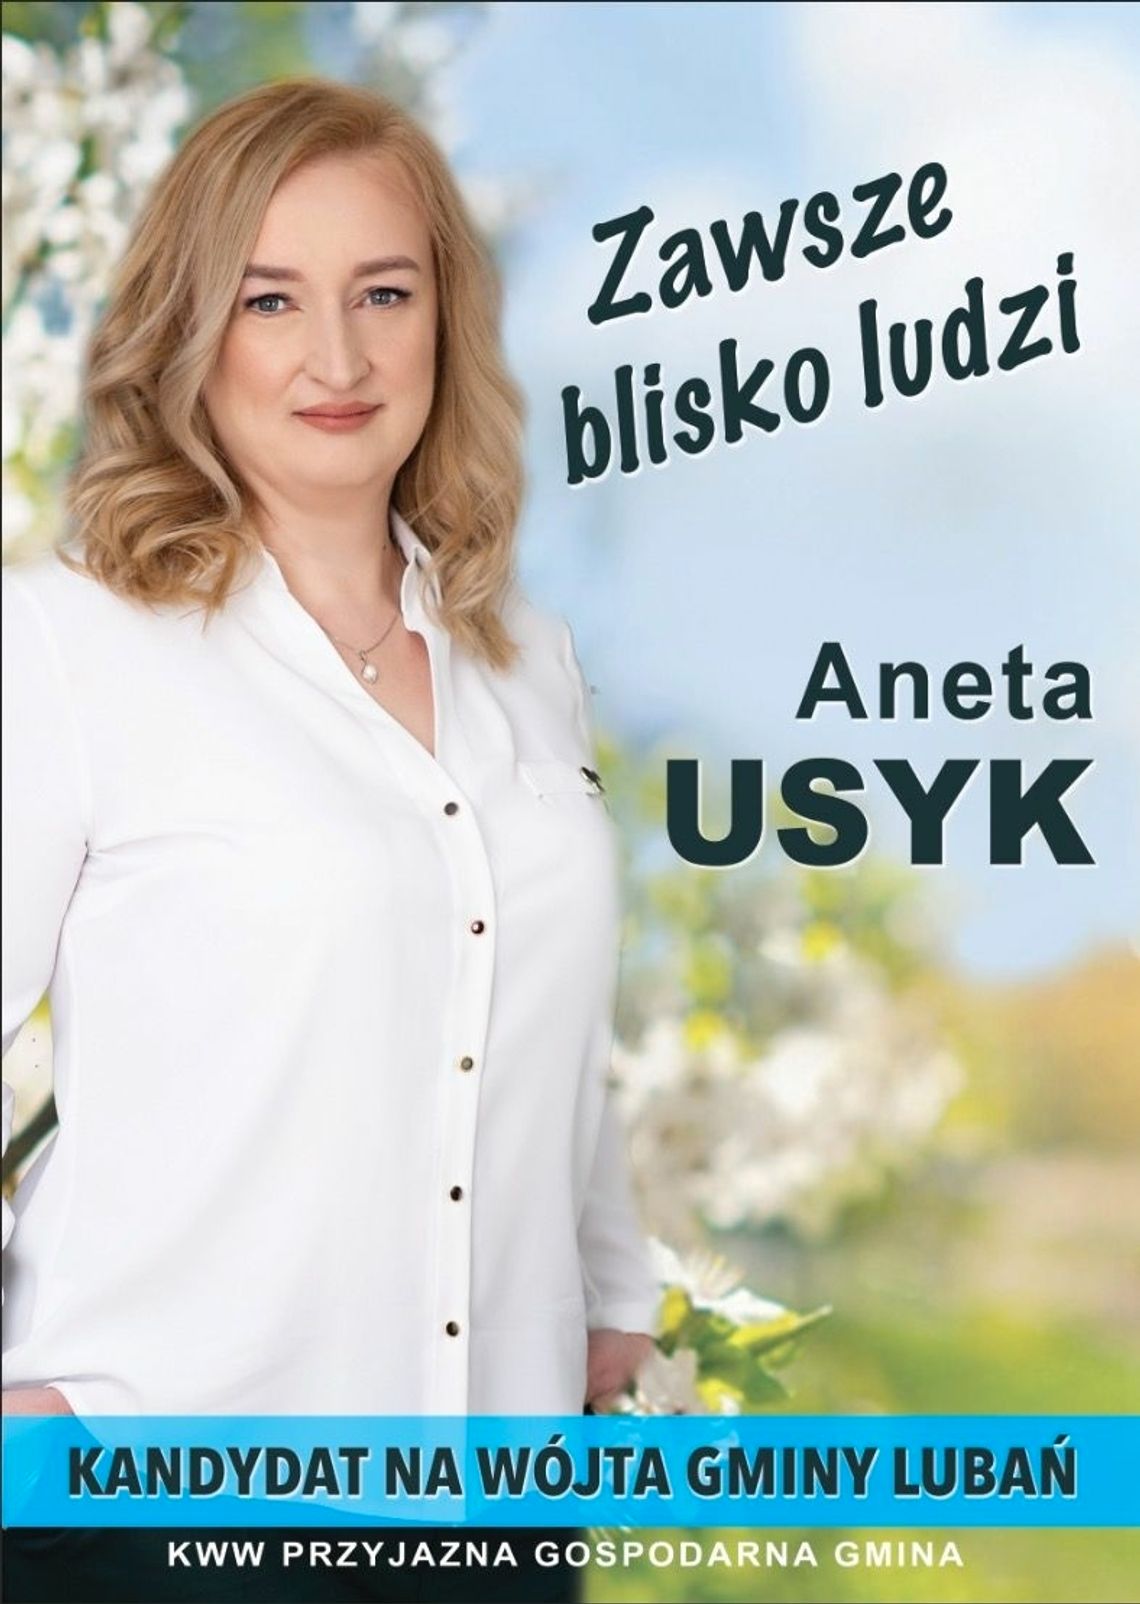 Aneta Usyk, kandydatka na Wójta Gminy Lubań przedstawia swoje pomysły, poglądy oraz plan działania